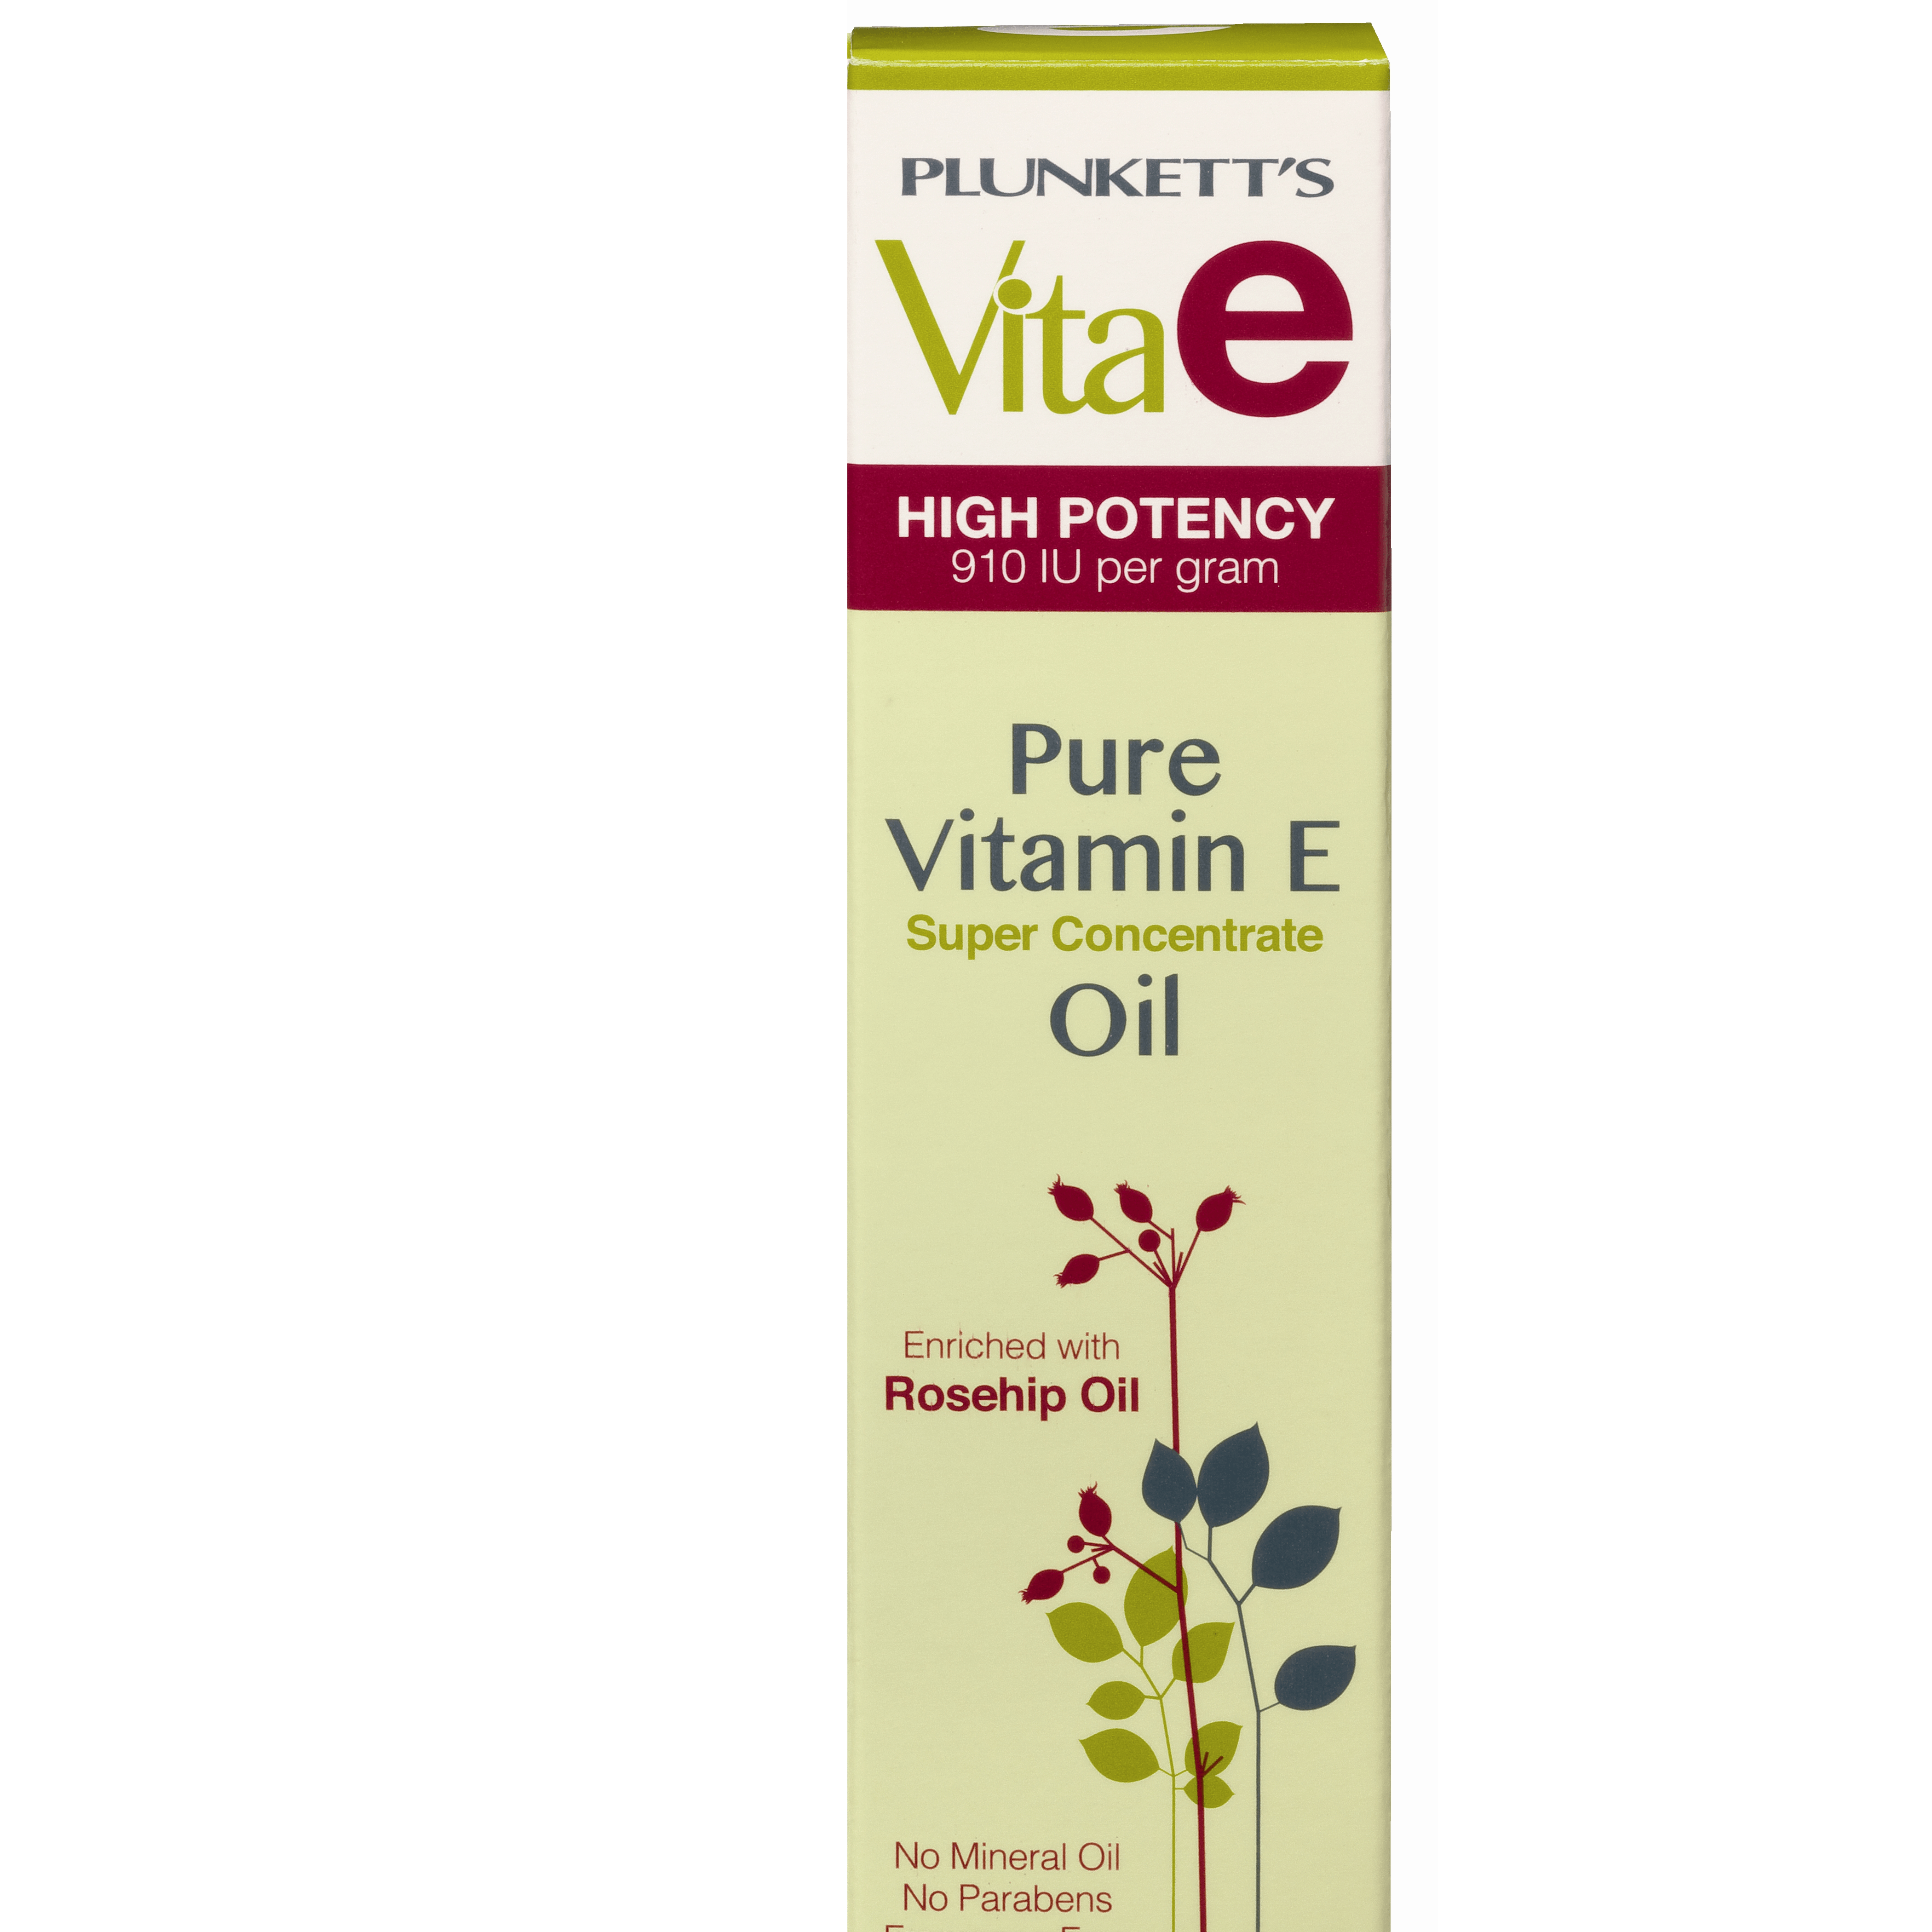 Plunkett Vita E Pure Vitamin E Oil